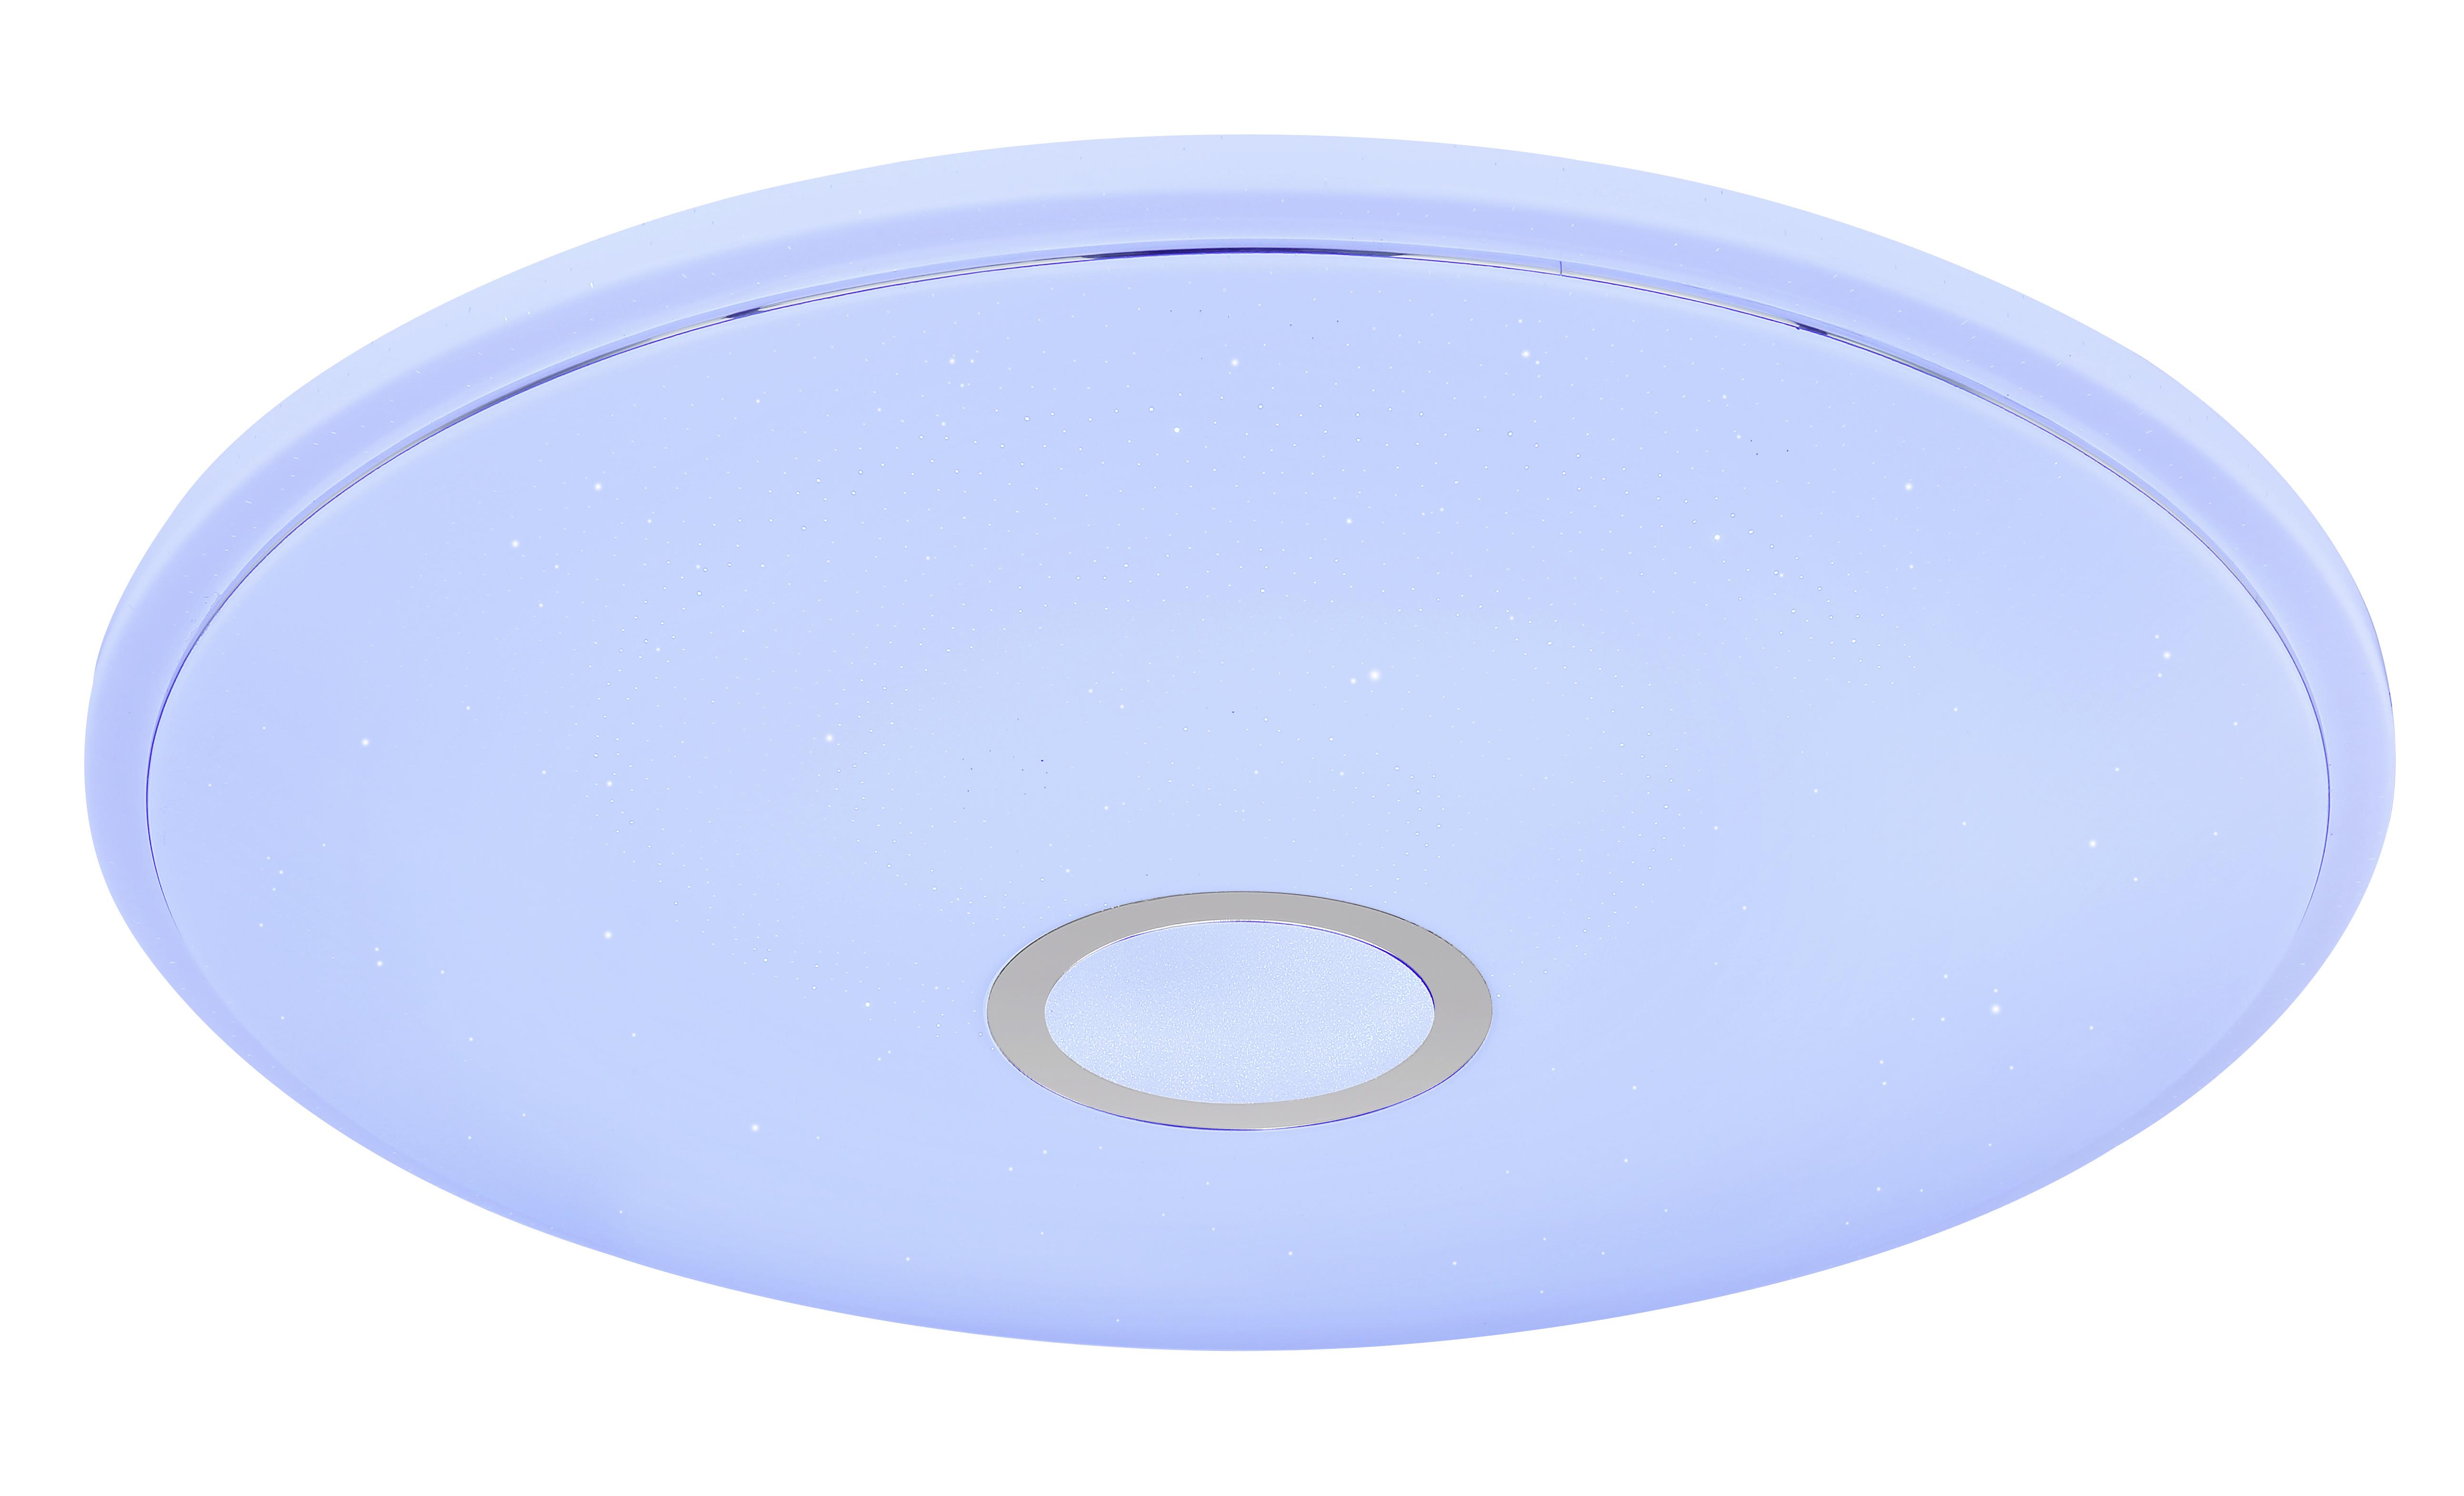 LED-Deckenleuchte Connor max. 30 Watt - Weiß, Kunststoff/Metall (68/9cm)